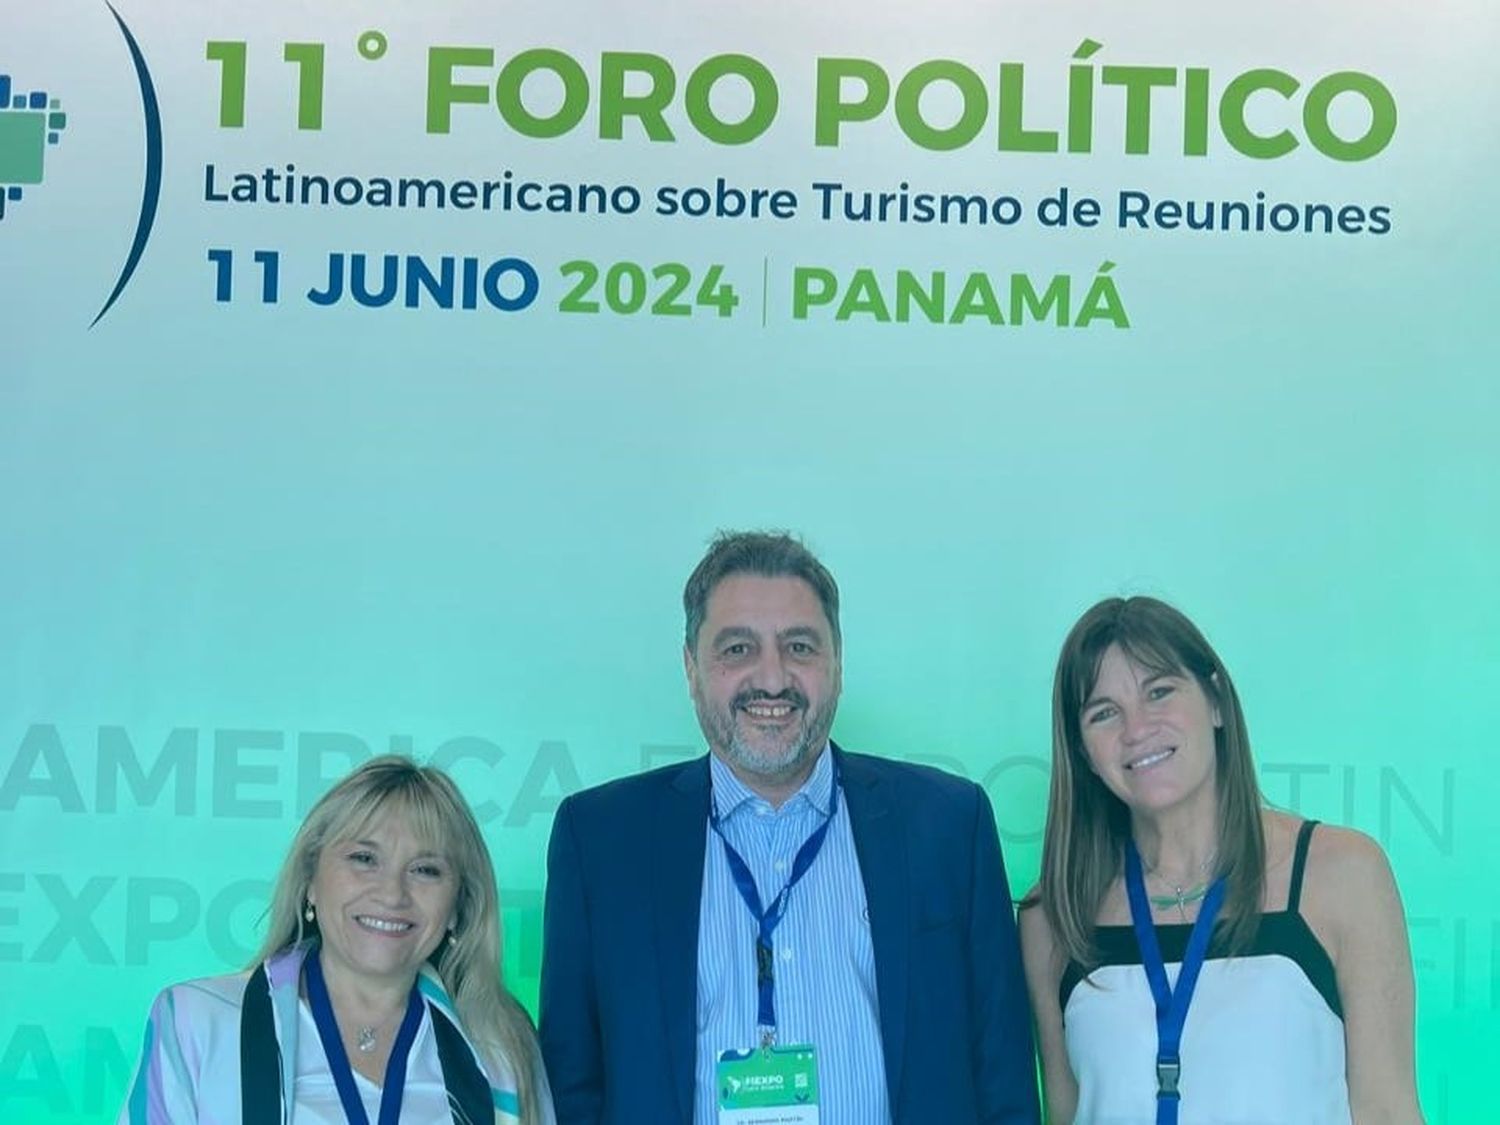 FIEXPO-Panamá: Mar del Plata busca atraer eventos entre organizadores Latinoamericanos y del mundo